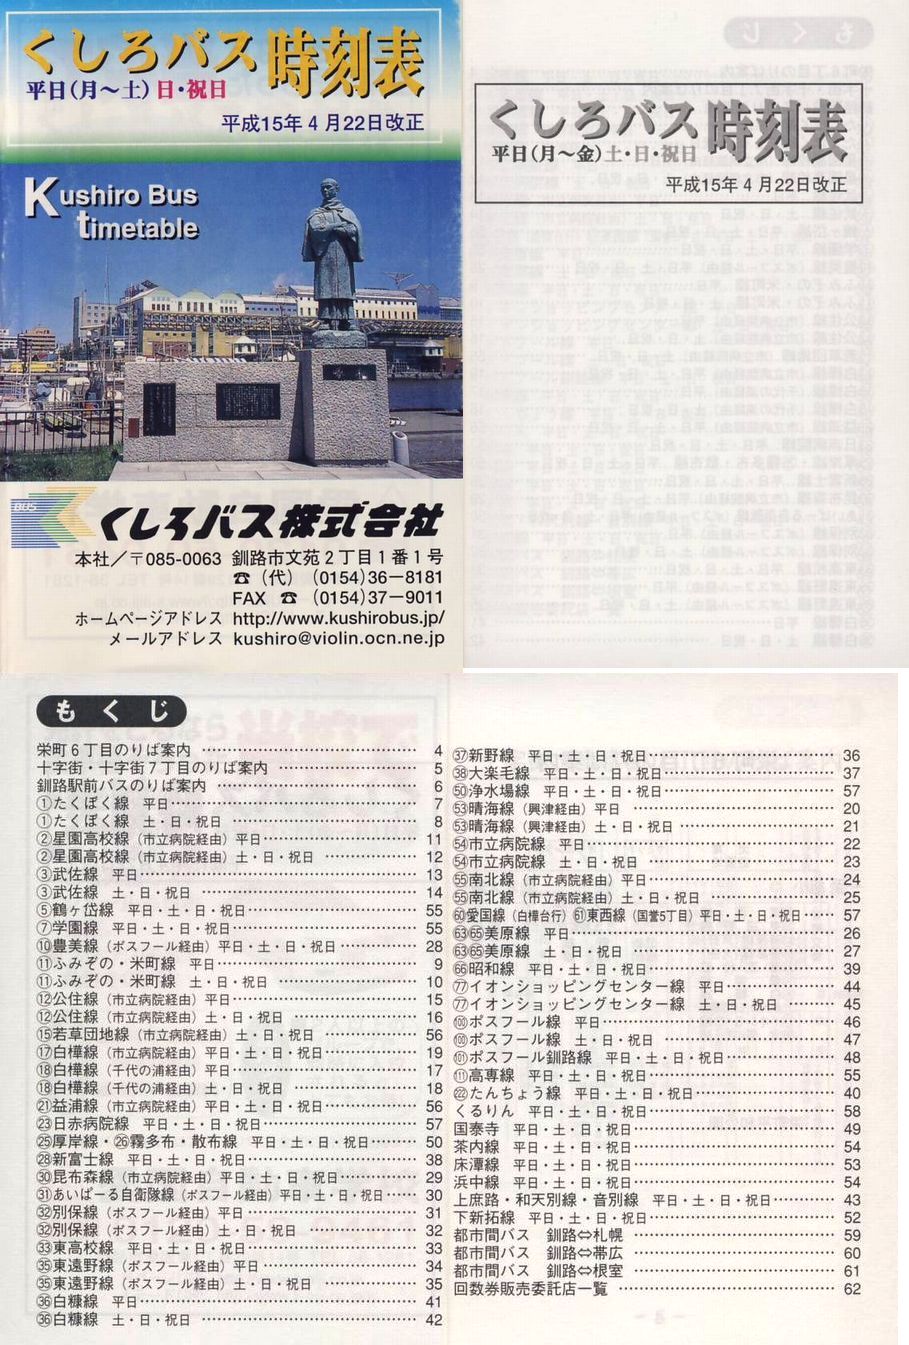 2003-04-22改正_くしろバス_冊子時刻表_00-03